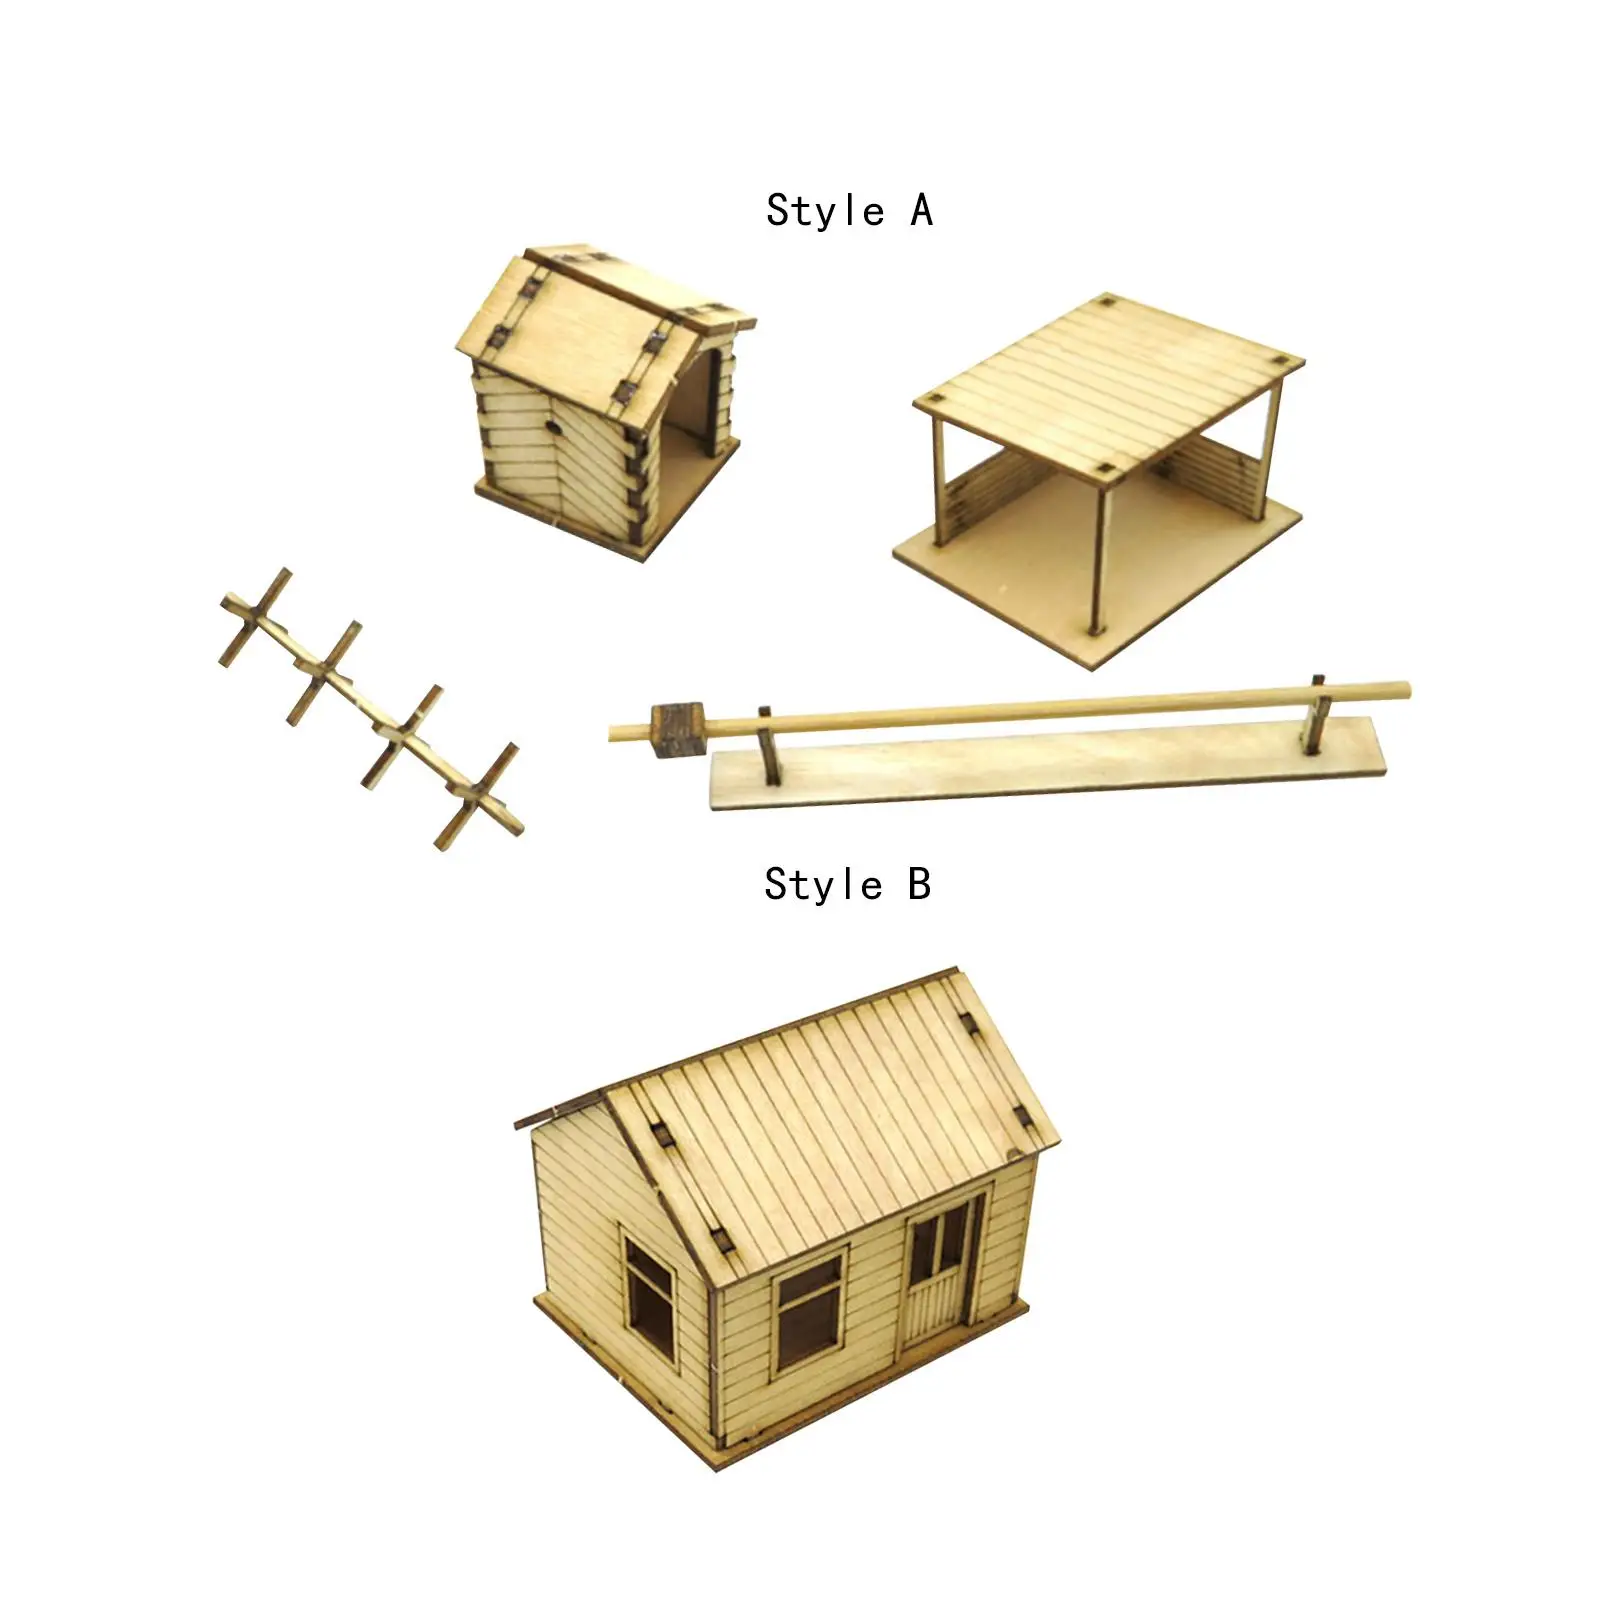 

Деревянные наборы моделей, 3D Пазлы ручной работы, поделки «сделай сам», масштаб 1:72, наборы строительных моделей для архитектуры, аксессуары, архитектурная модель